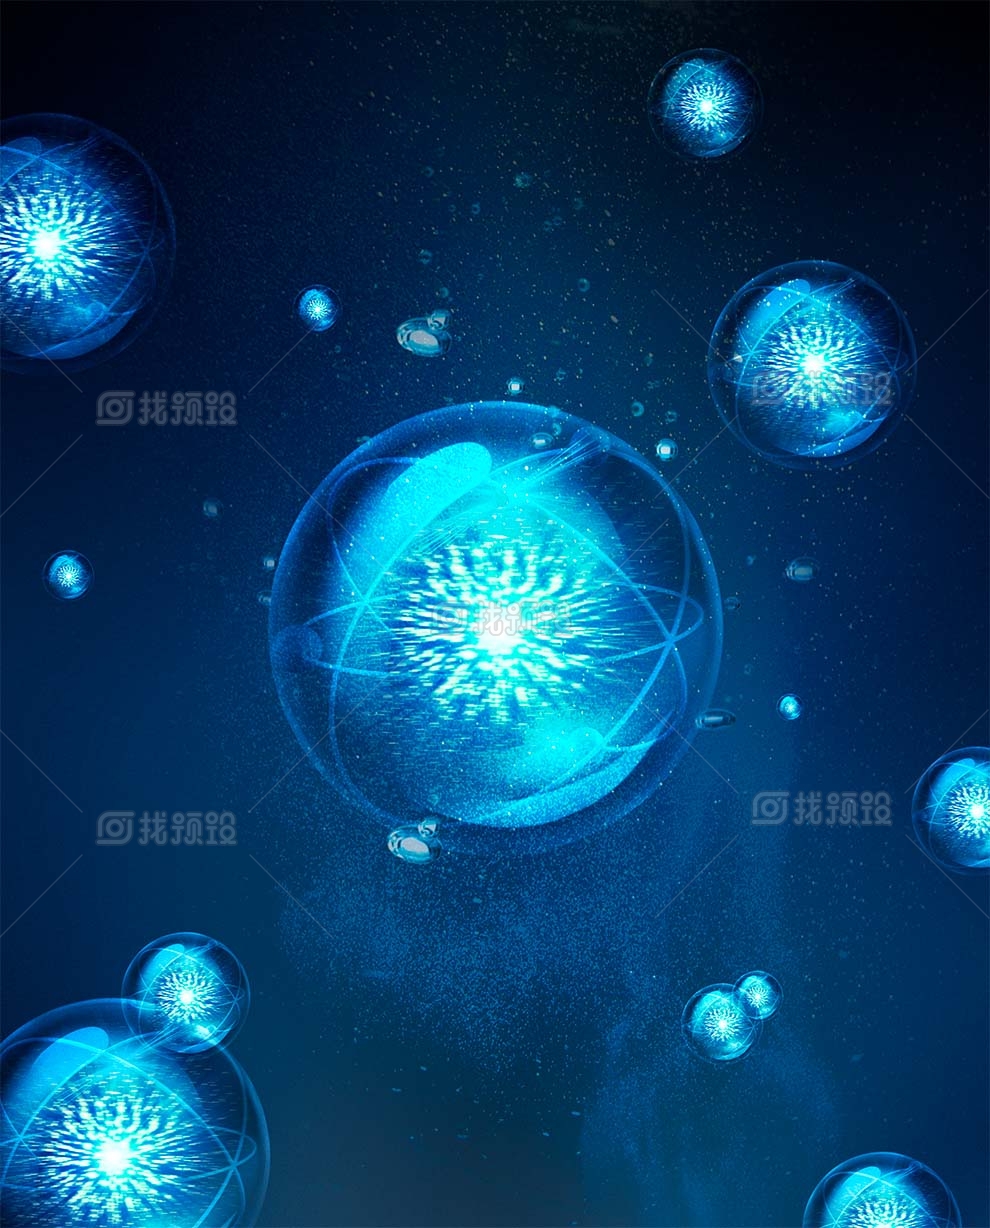 找预设网蓝色分子细胞水滴水珠psd素材下载2023年3月28日 1673880609 6356e9bfbe6ae4eb6ee0f5842b1c362f